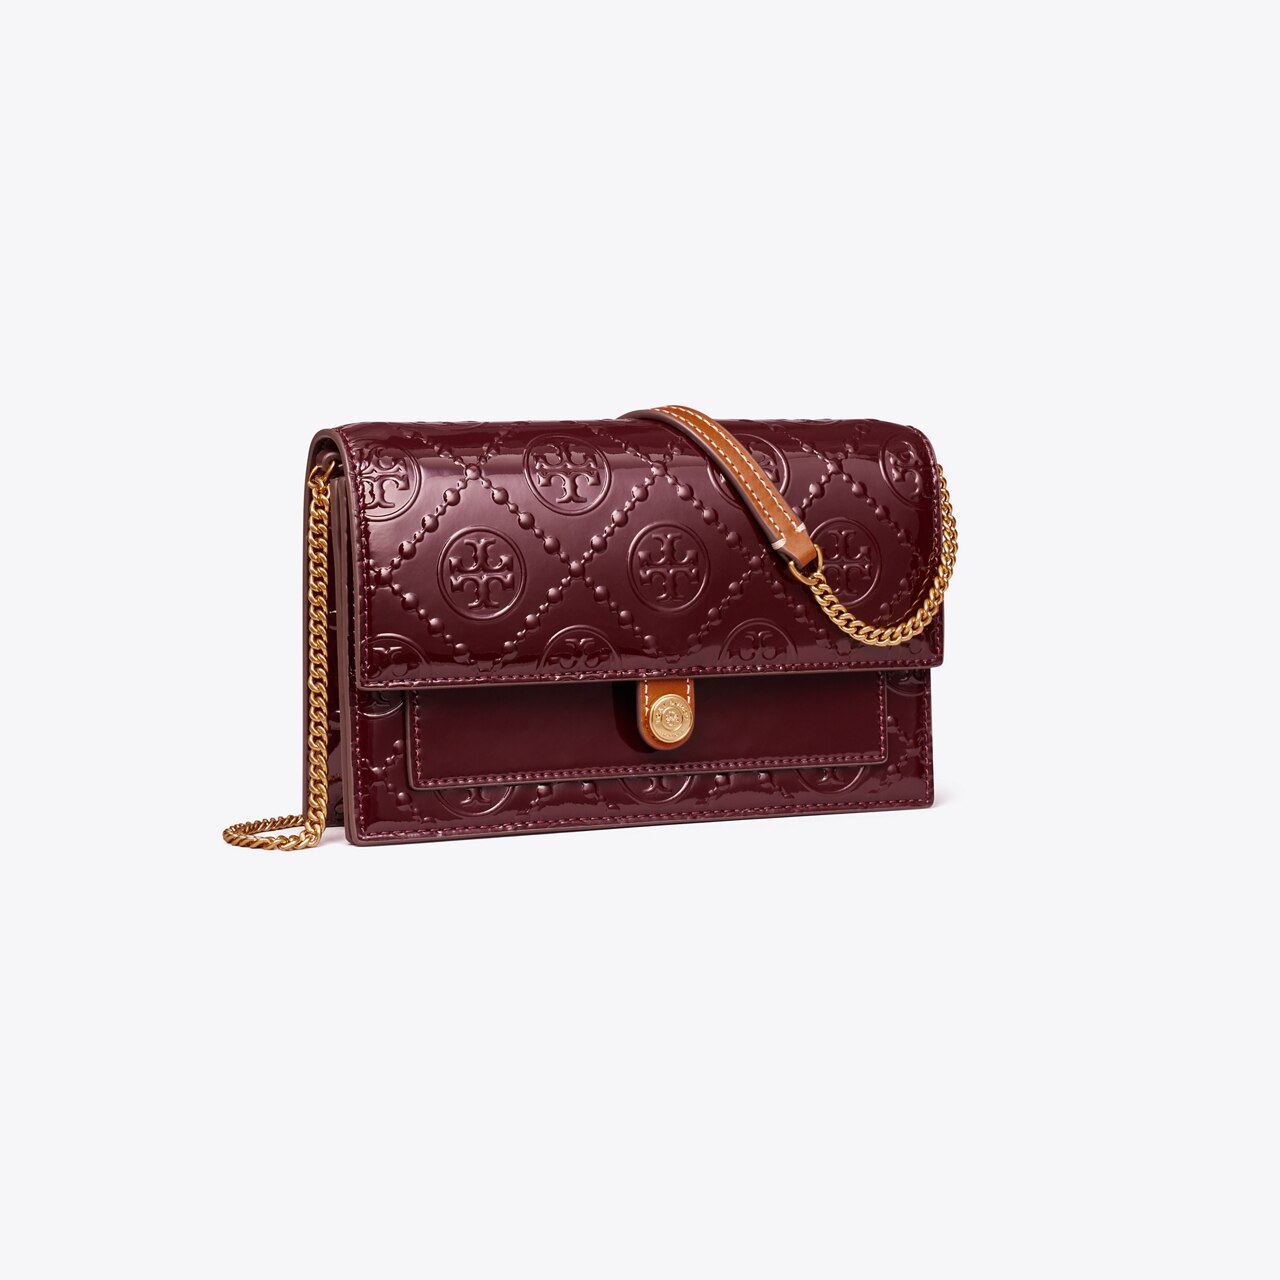 leather embossed monogram wallet